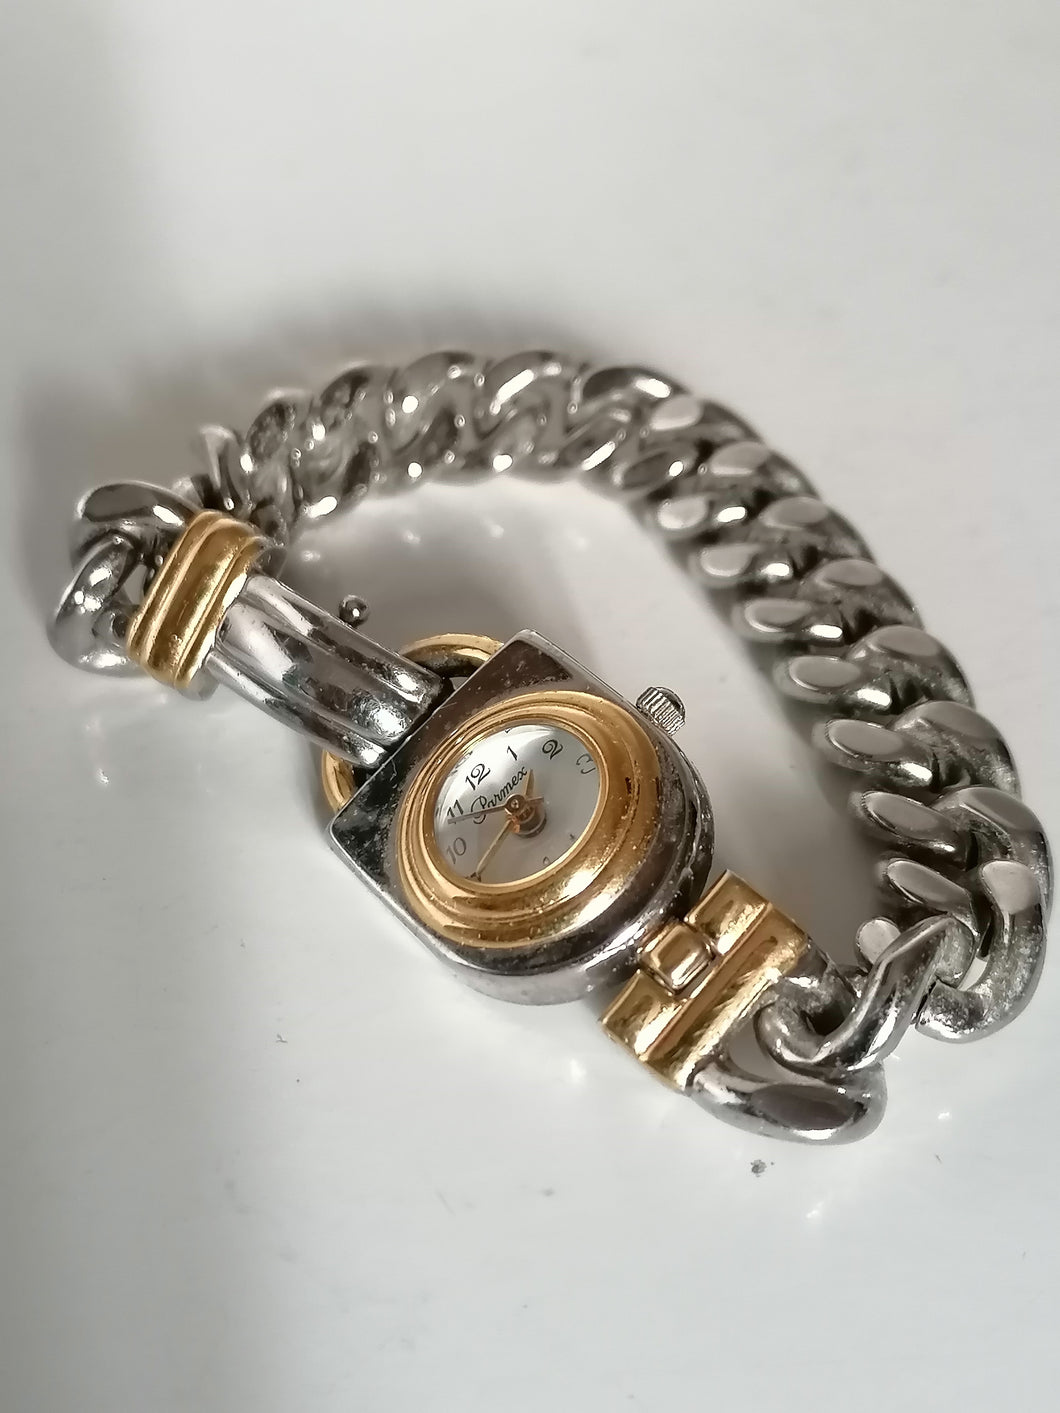 Parmex quartz montre bracelet dame. Pile à changer. 